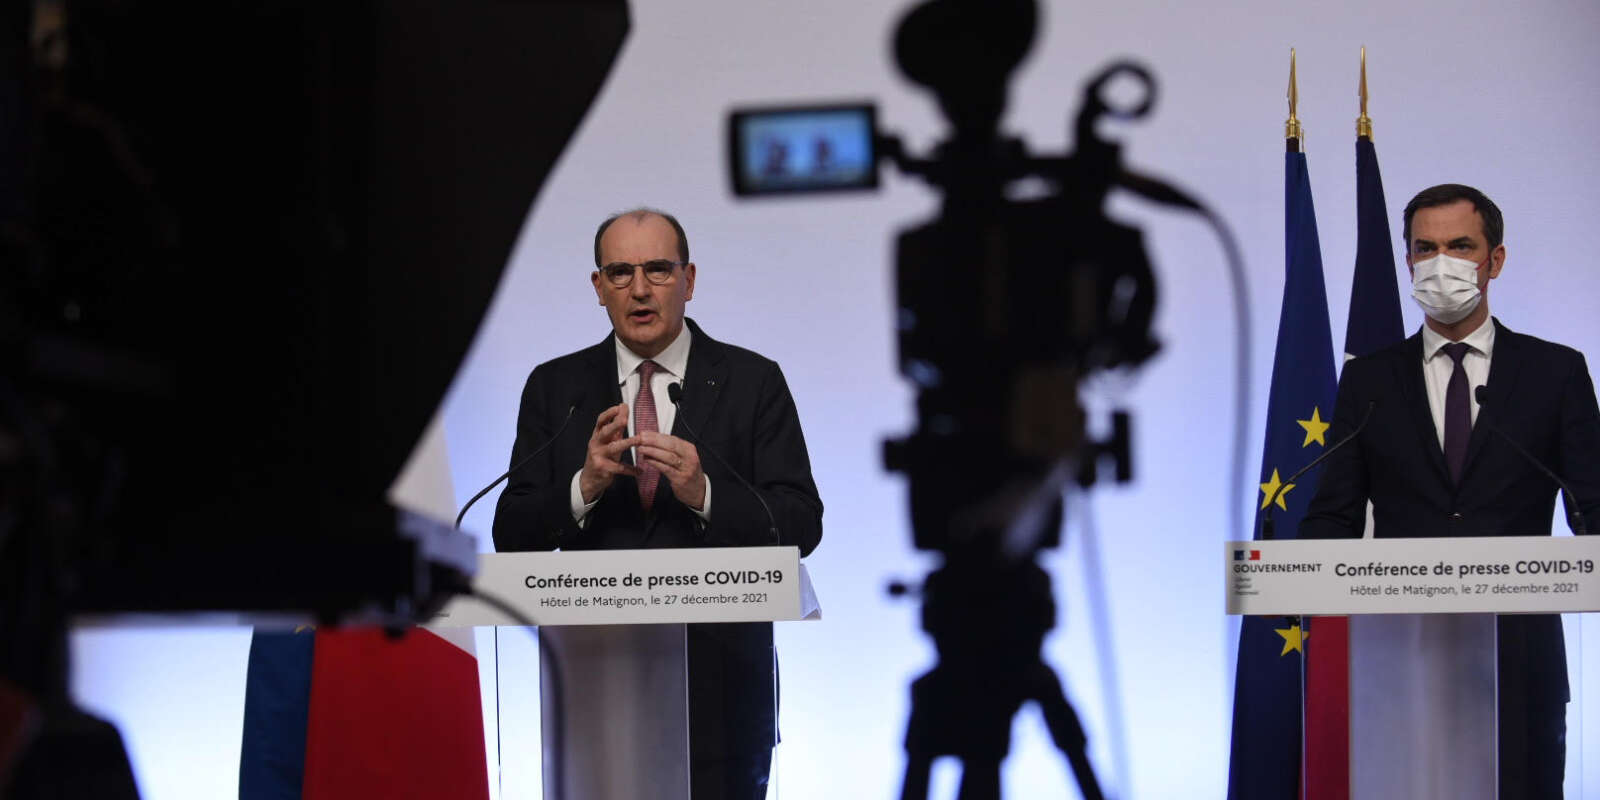 Le premier ministre, Jean Castex, et le ministre de la santé, Olivier Véran, s’expriment lors d’une conférence de presse visant à lutter contre le variant Omicron, lundi 27 décembre, à Paris.